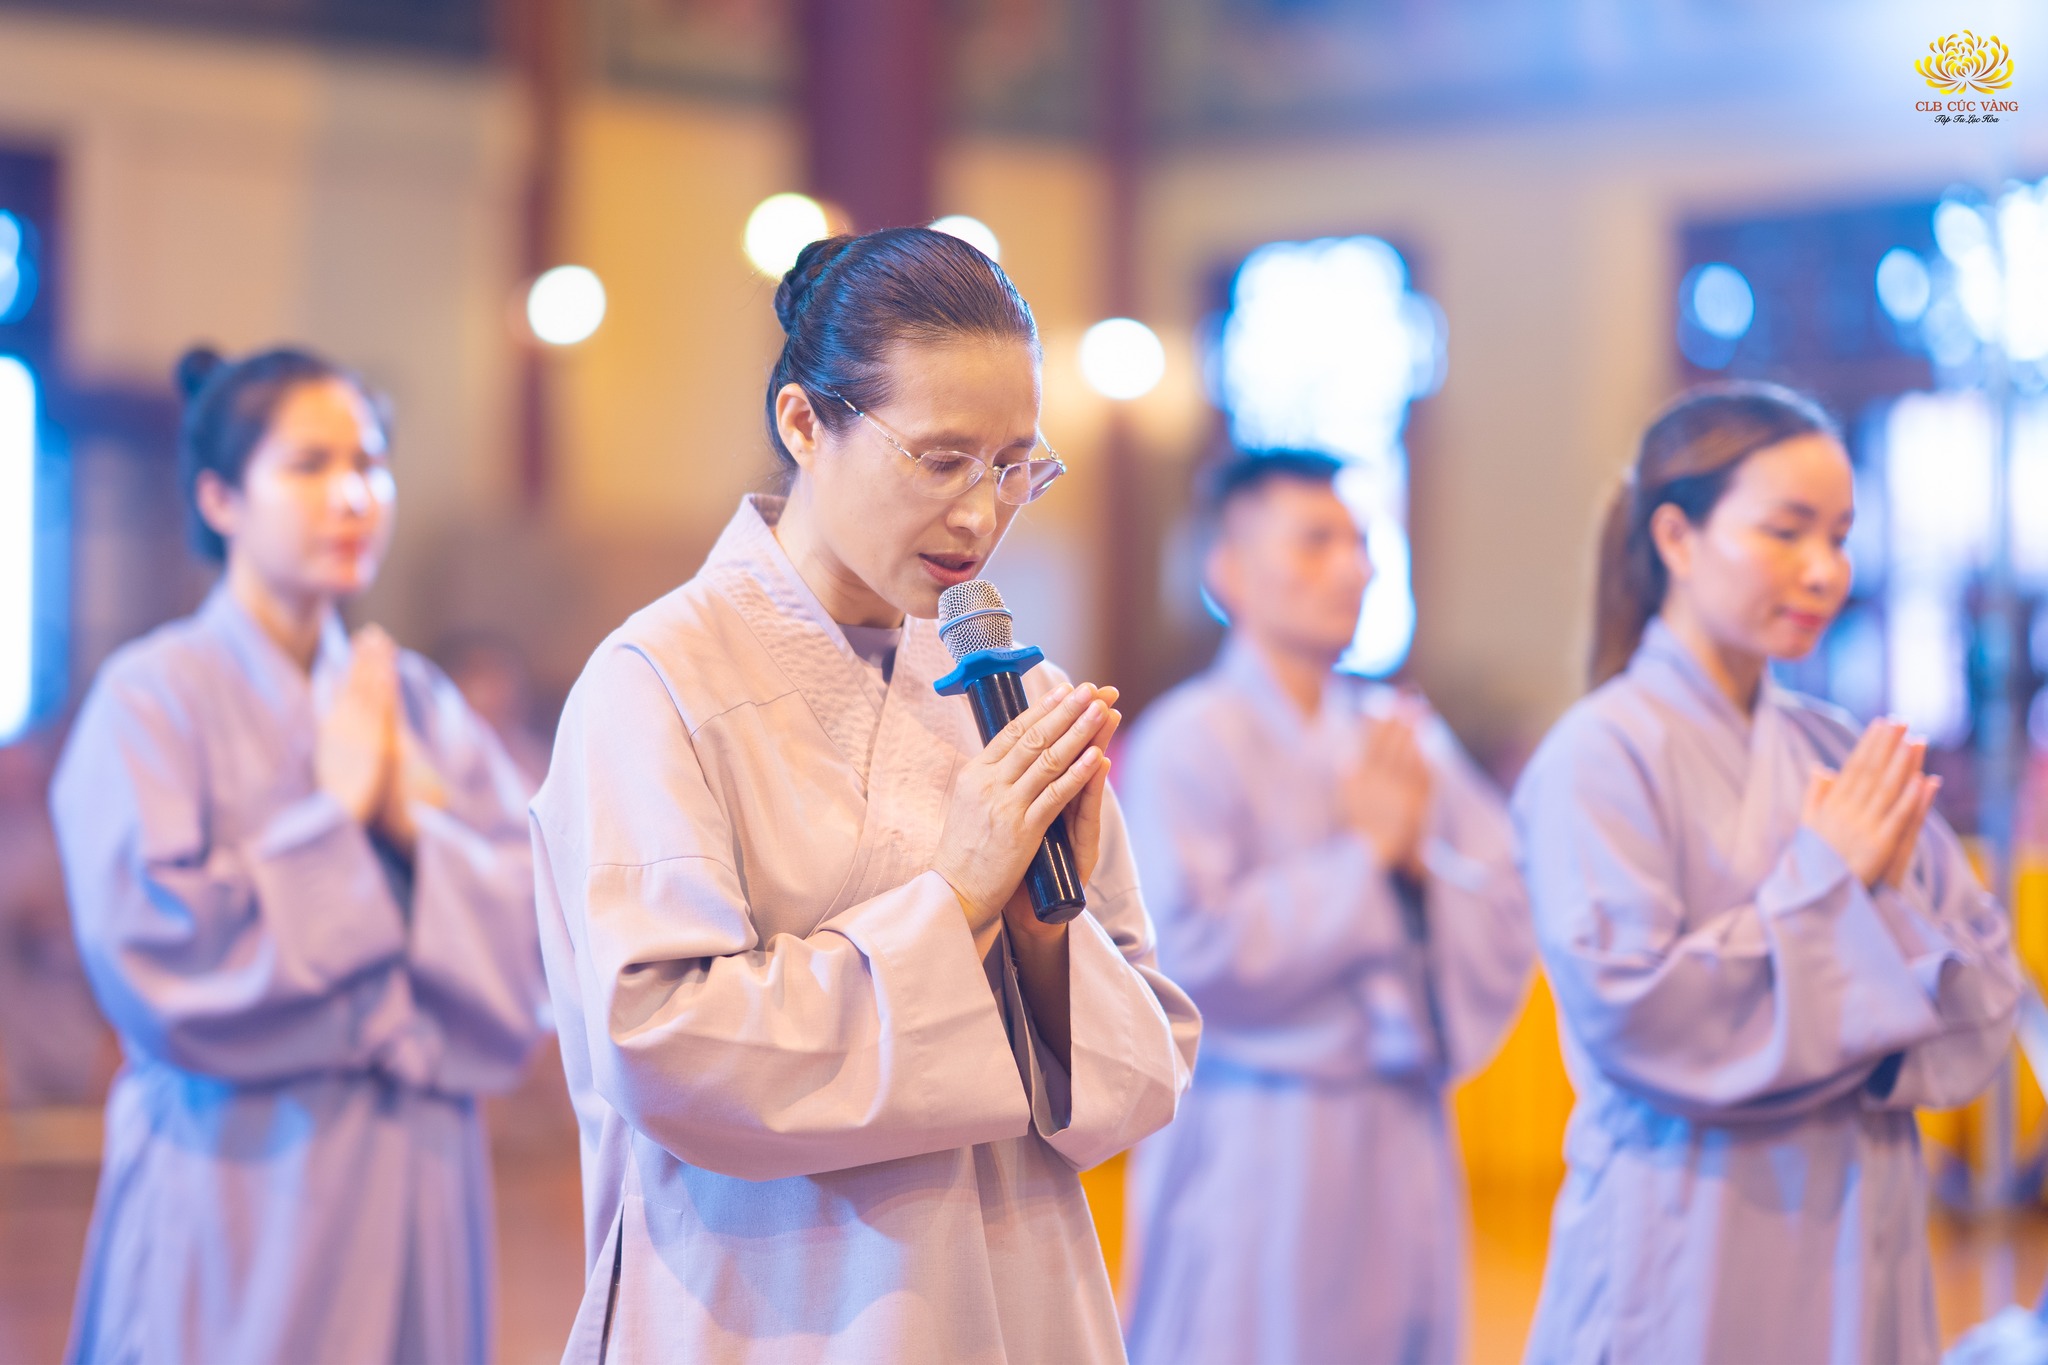 Cô Phạm Thị Yến đại diện cho các Phật tử trong CLB Cúc Vàng đã dâng lời tác bạch, cầu thỉnh Sư Phụ chứng minh cho lời phát nguyện Bồ Đề của các Phật tử.